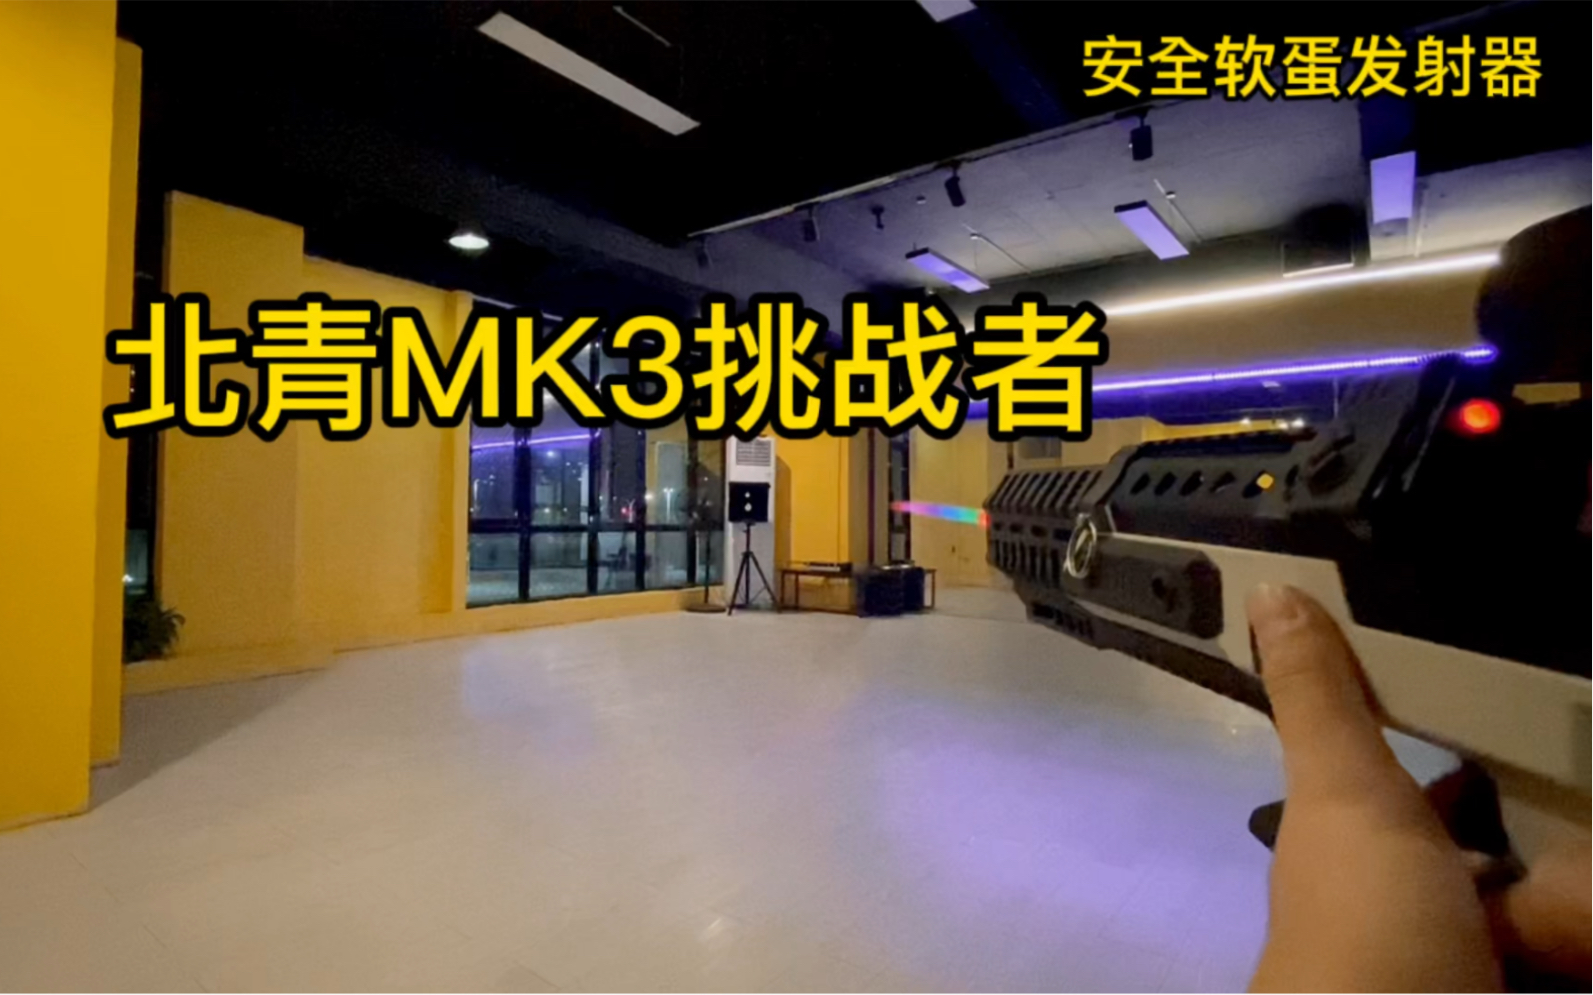 北青MK3完全体➕彩虹消测试把玩